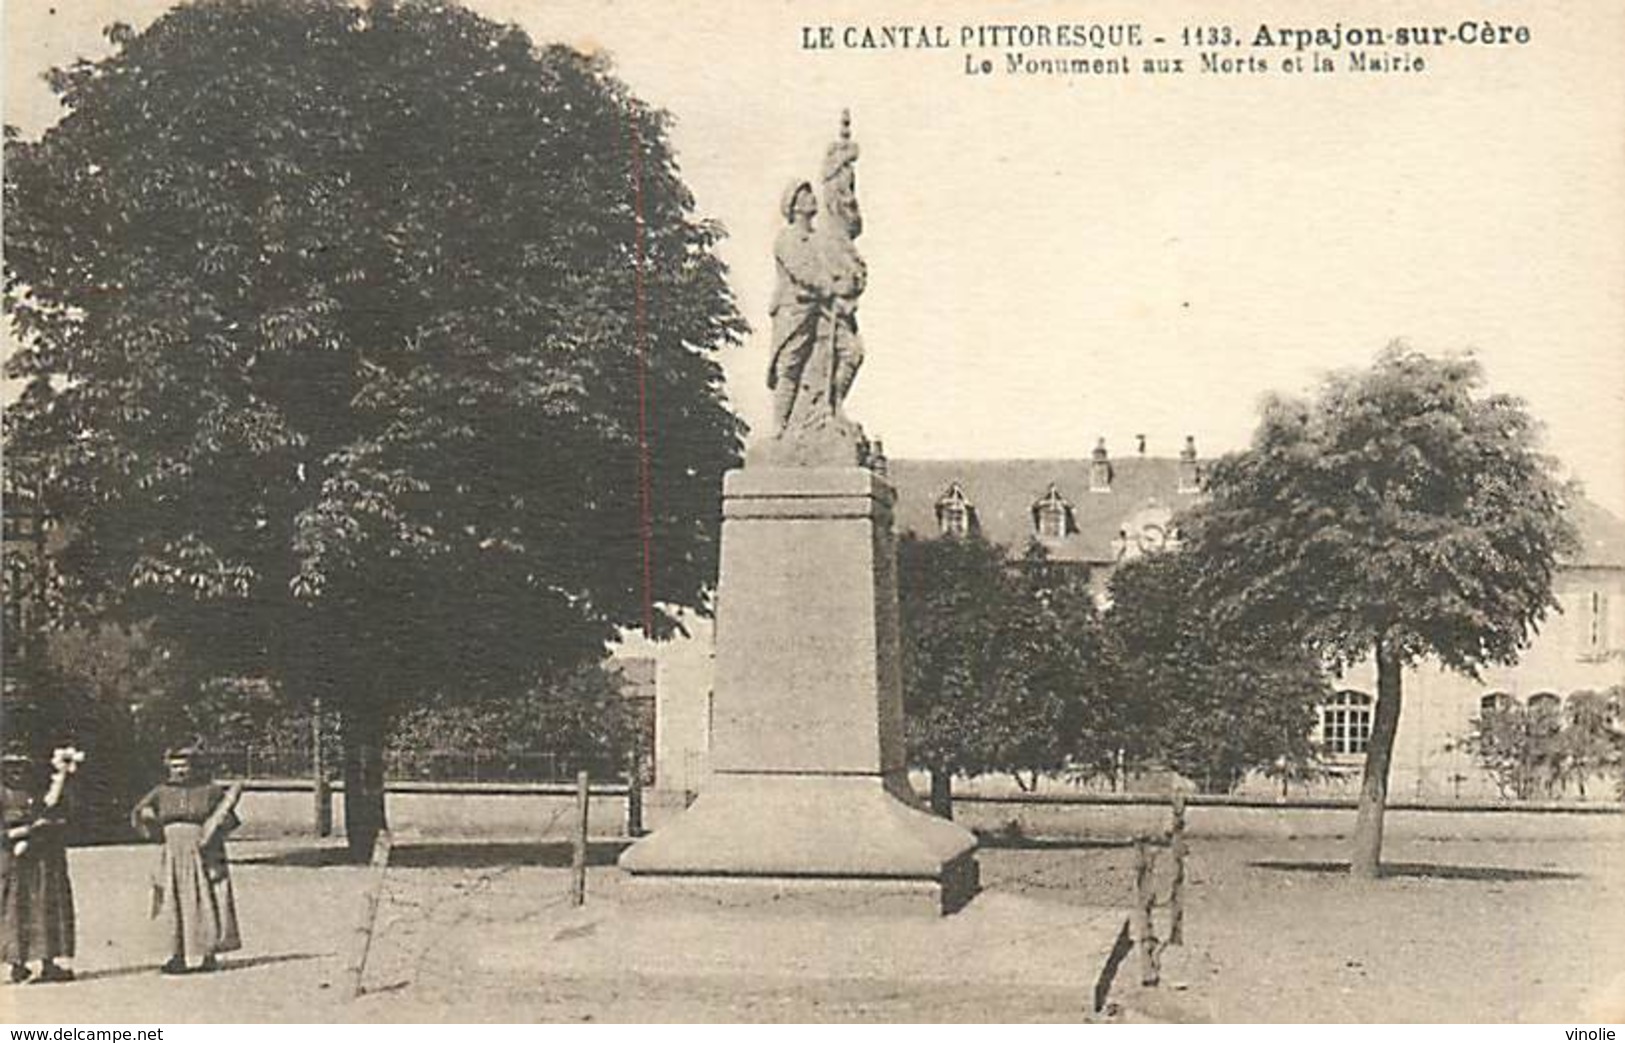 A-17-1954 : MONUMENT AUX MORTS DE LA GRANDE-GUERRE 1914-1918. ARPAJON SUR CERE - Arpajon Sur Cere